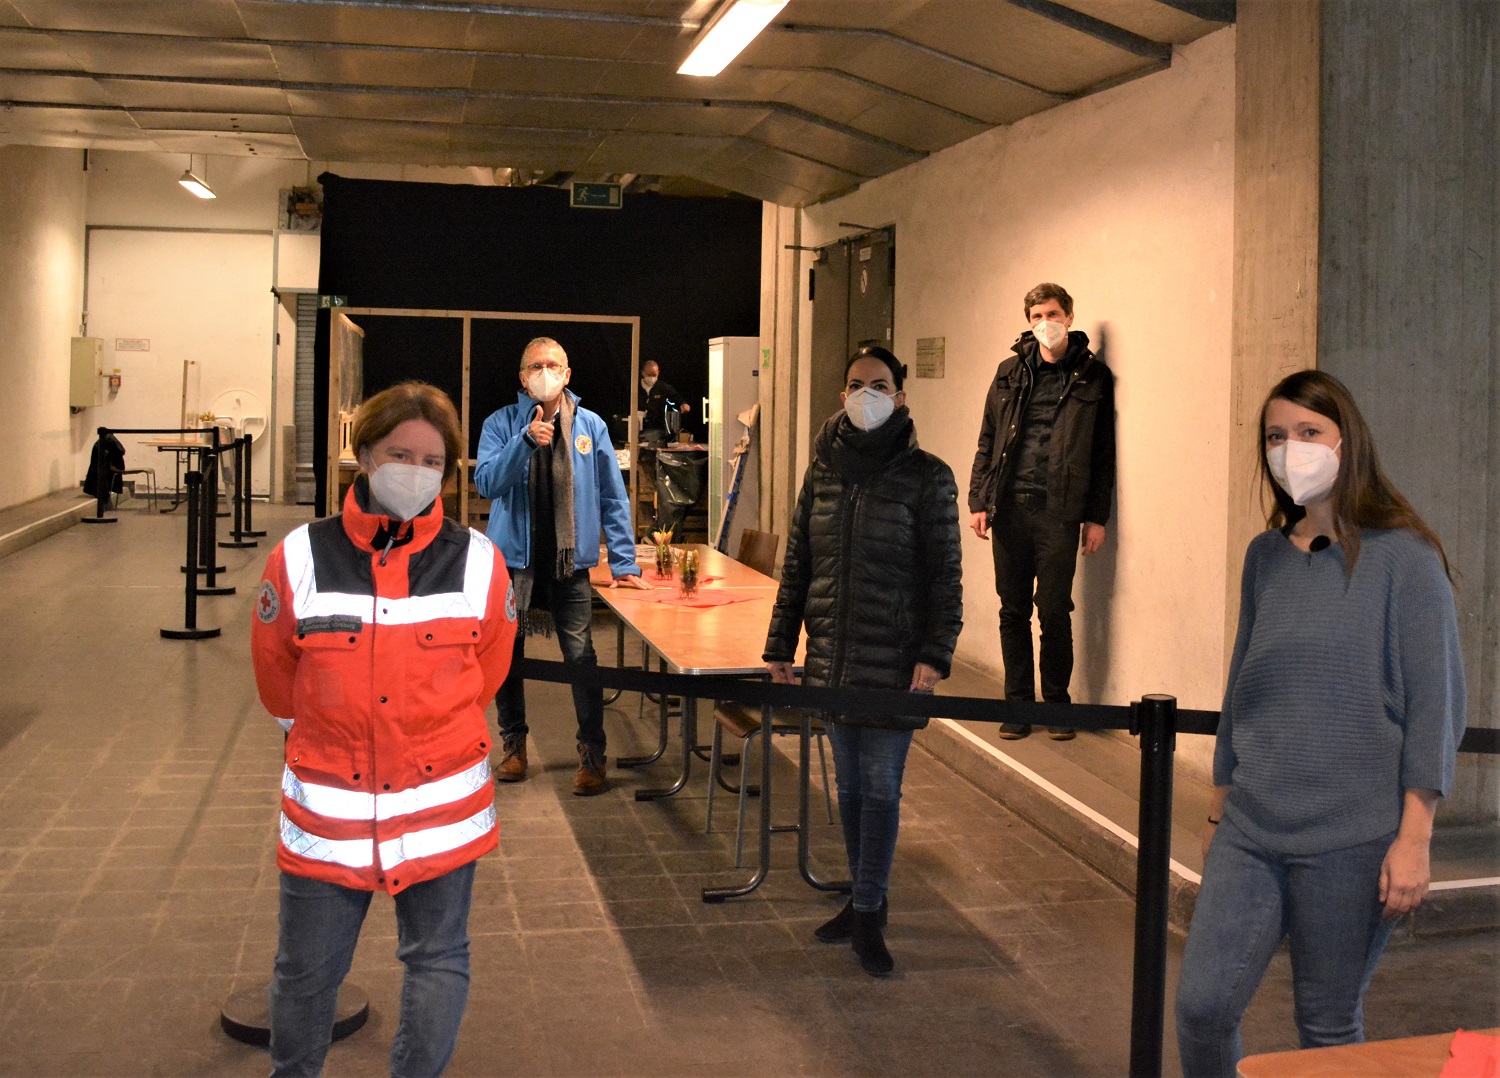 Einrichtung Einer Warmehalle Im Corona Winter Schutz Fur Obdachlose Bahnhofsmission Wurzburg